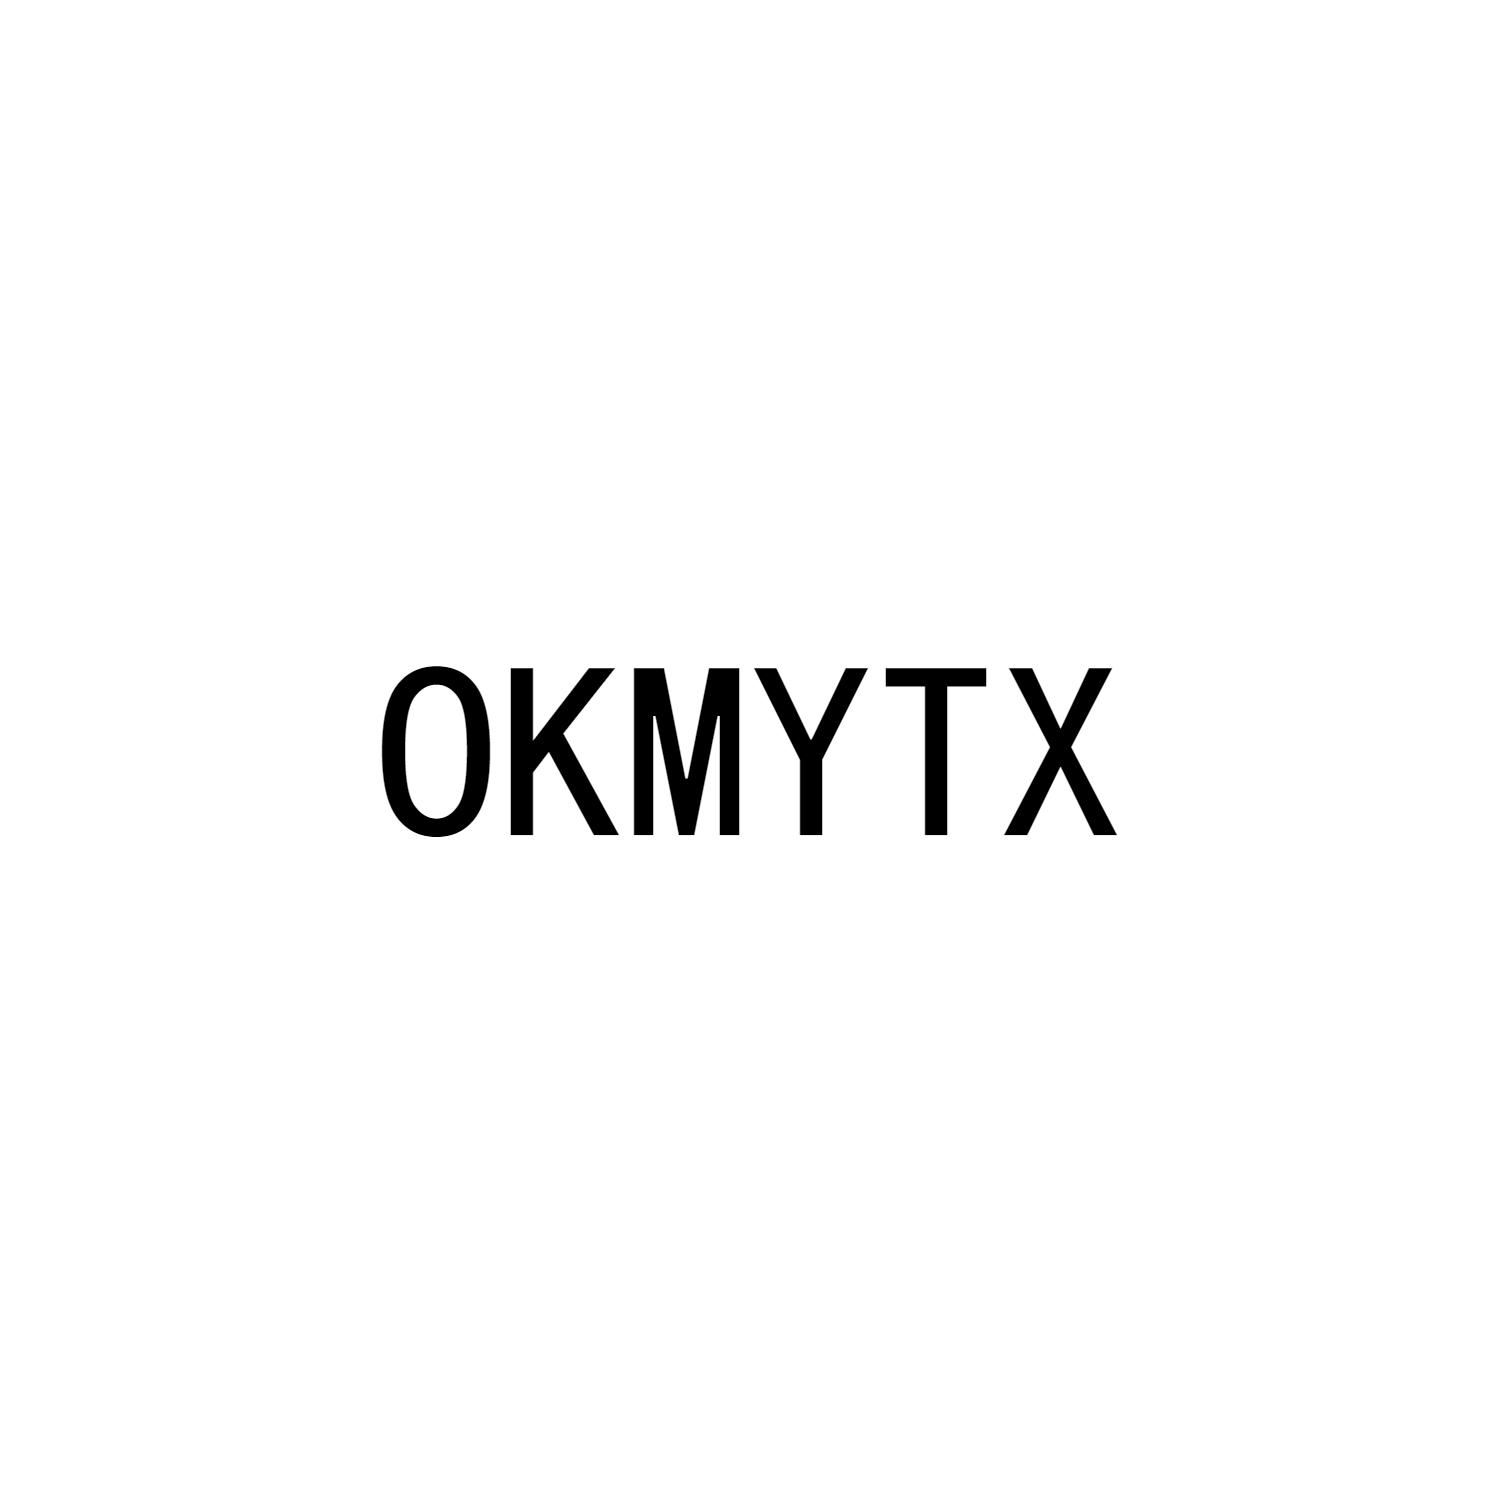 OKMYTX